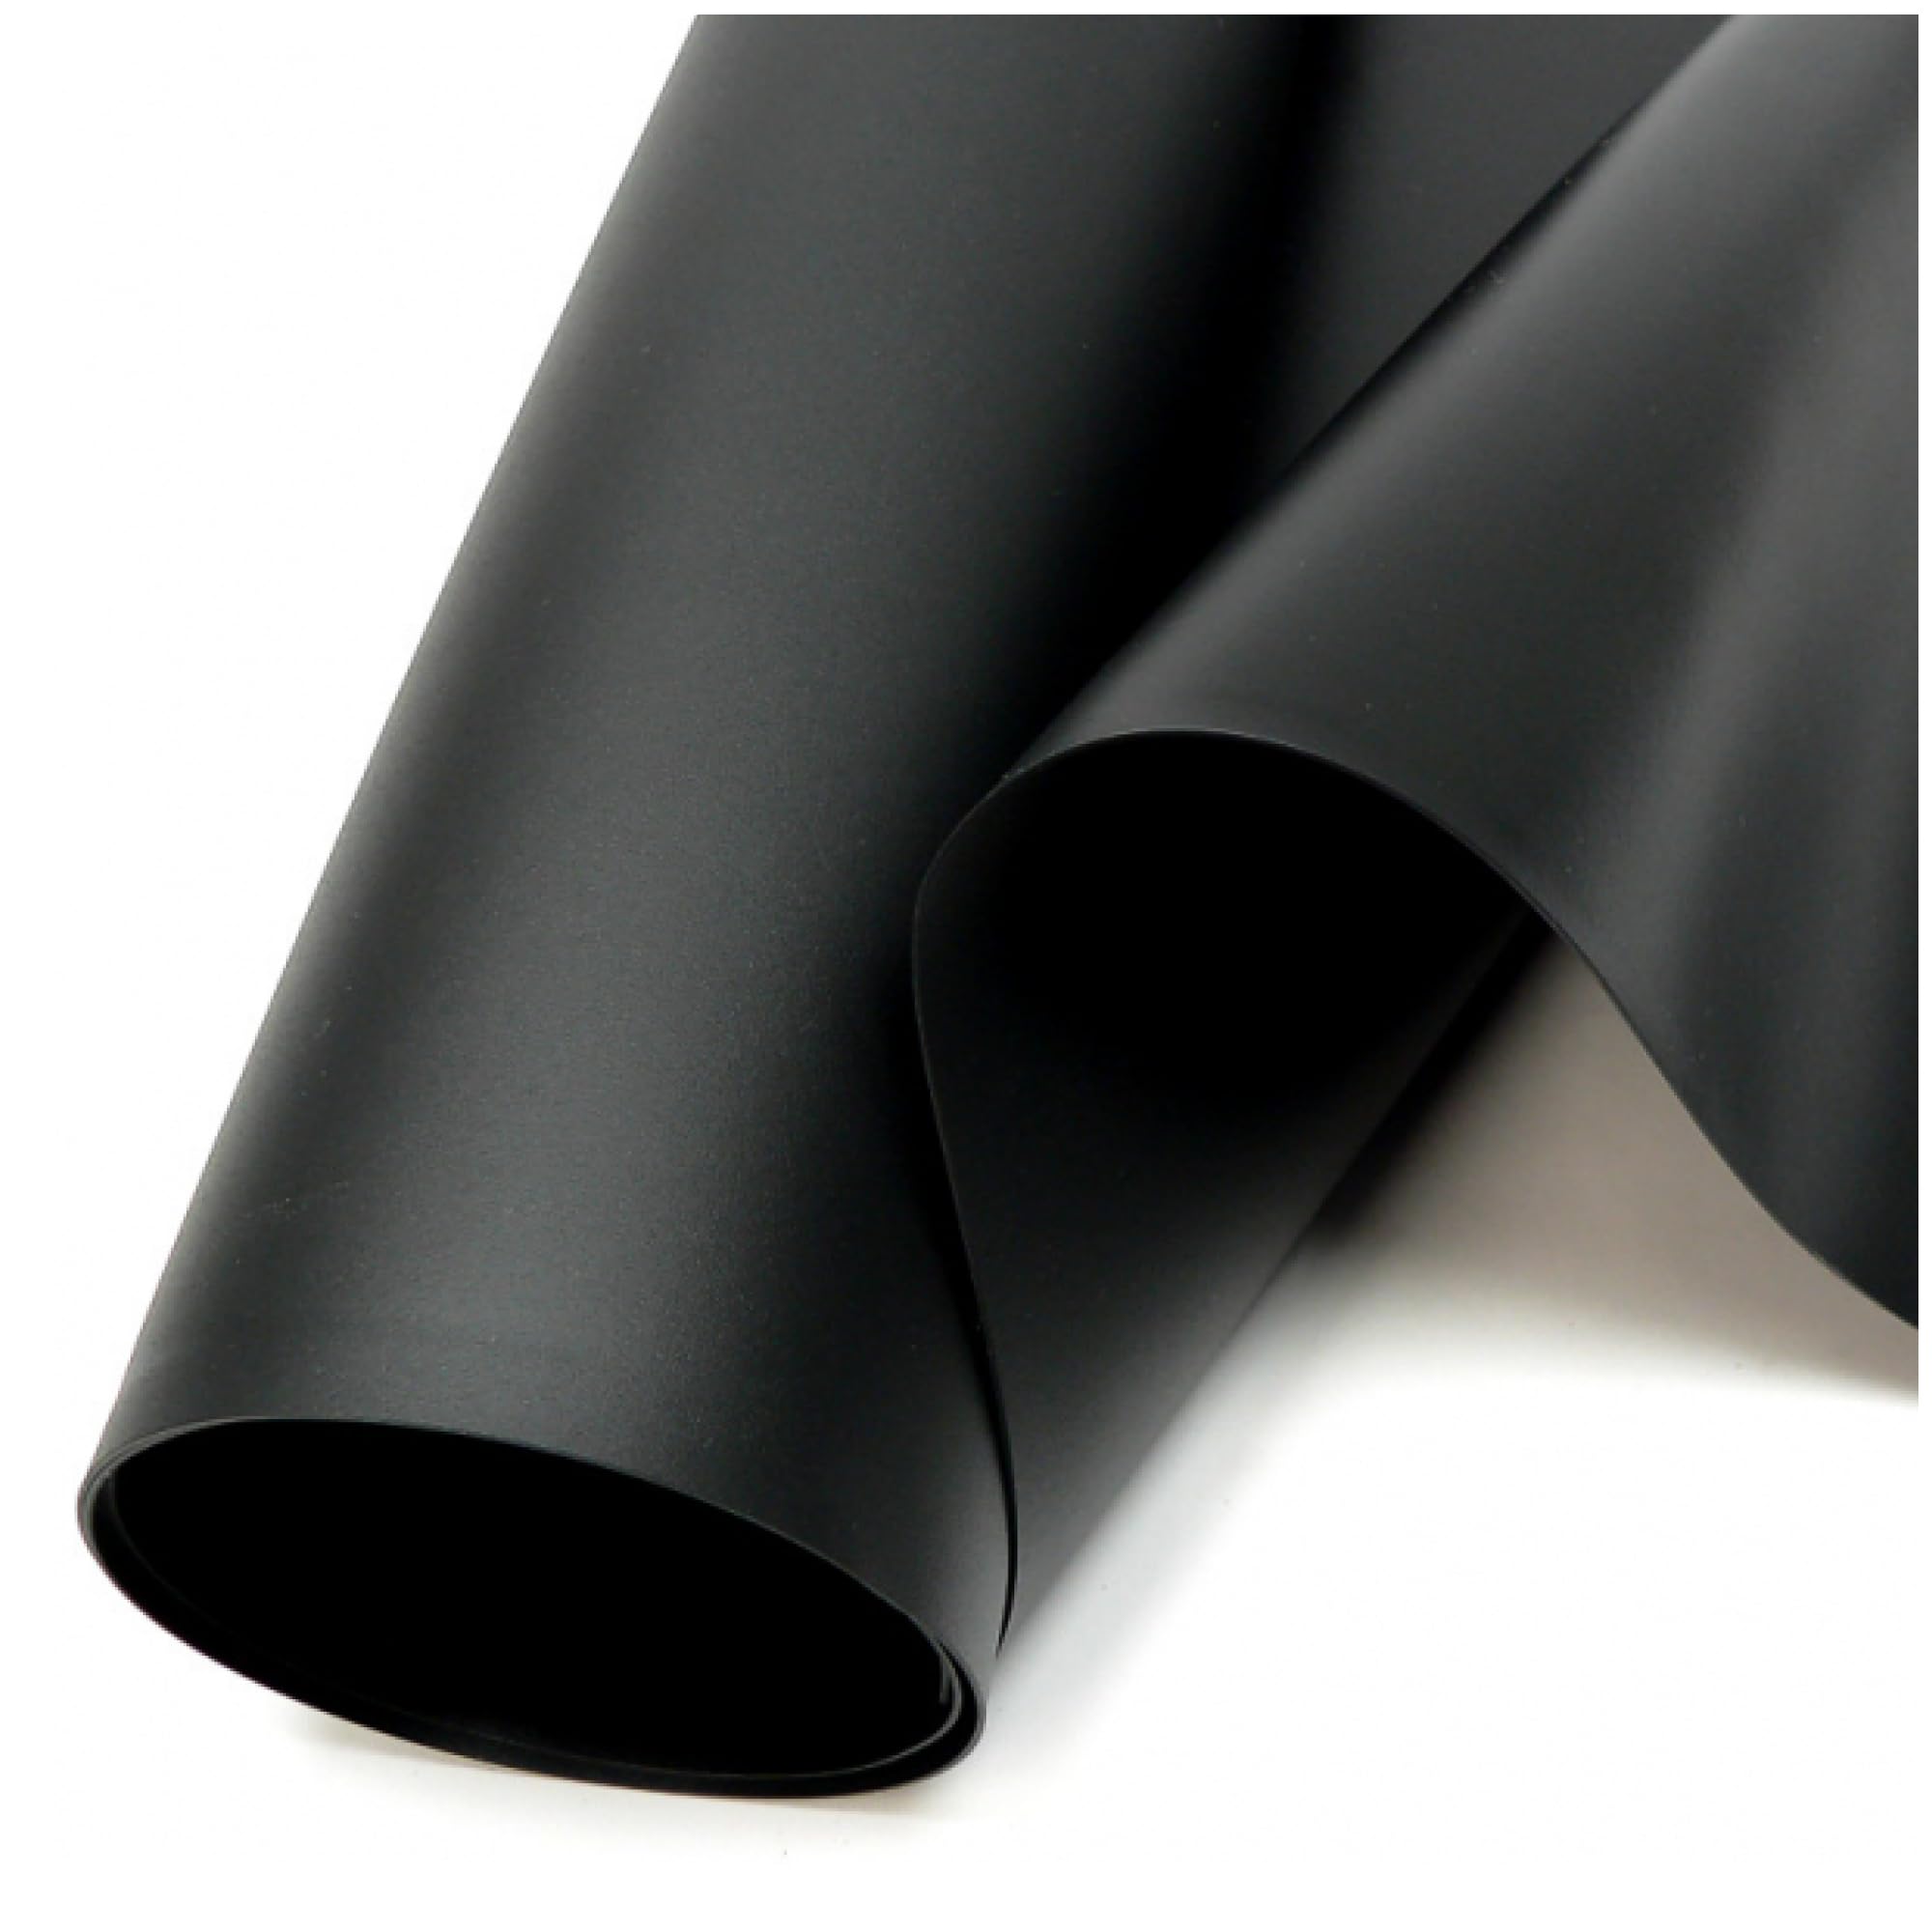 SIKA Premium PVC Teichfolie schwarz (PVC Stärke 1,5 mm, 6 m x 10 m) - Verschiedene Stärken & Größen/PVC Folie schwarz auch geeignet als Hochbeet Folie wasserdicht